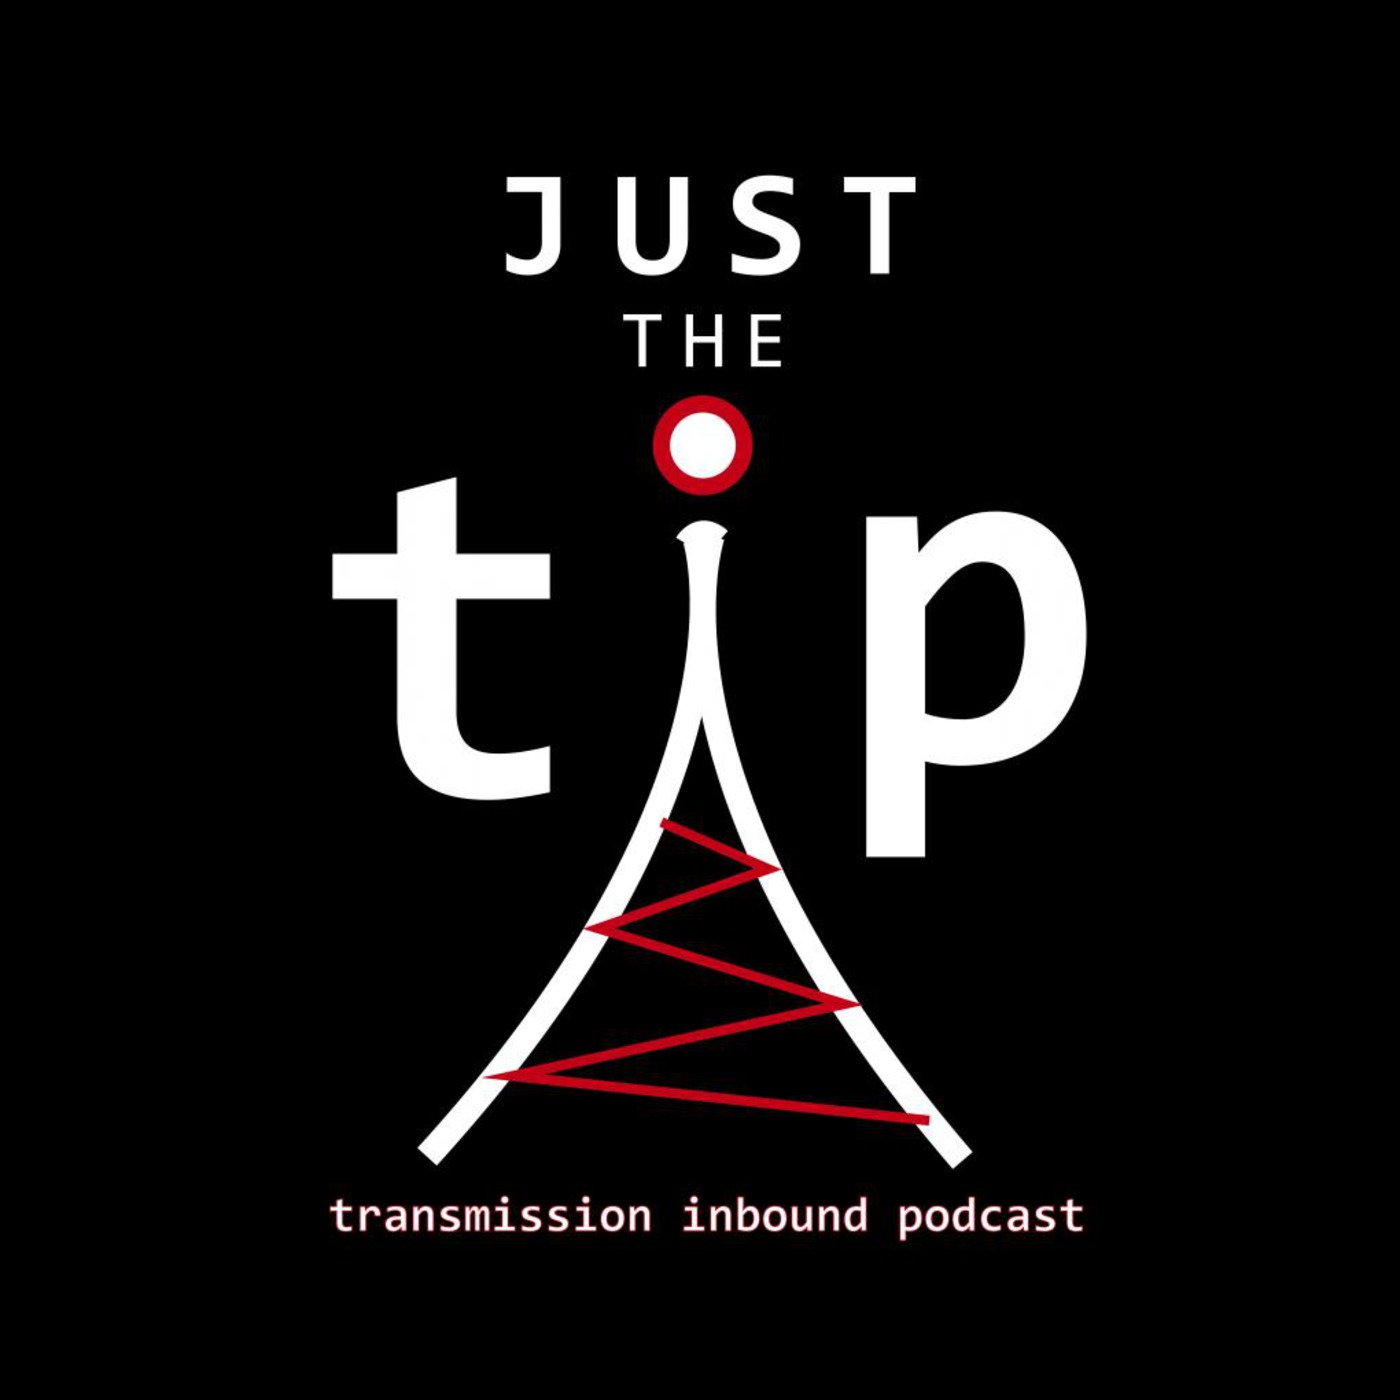 Transmission Inbound Podcast